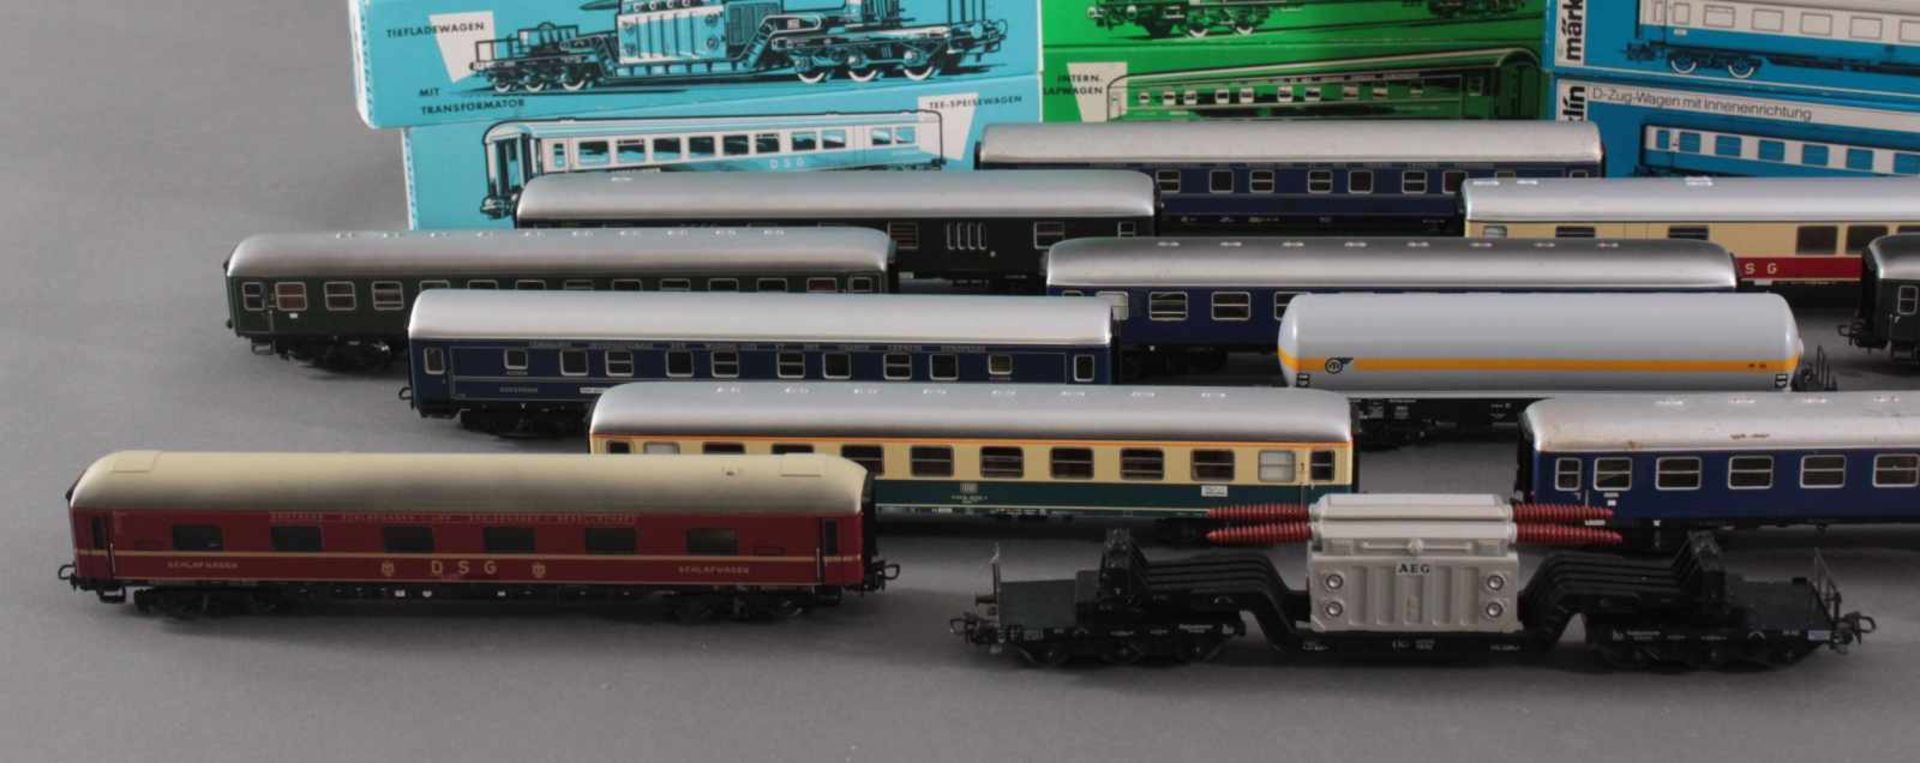 14 Märklin Güterwaggons in der Originalverpackung Spur H0Modellnummer 4044, 4064, 4052, 4617, - Image 2 of 4